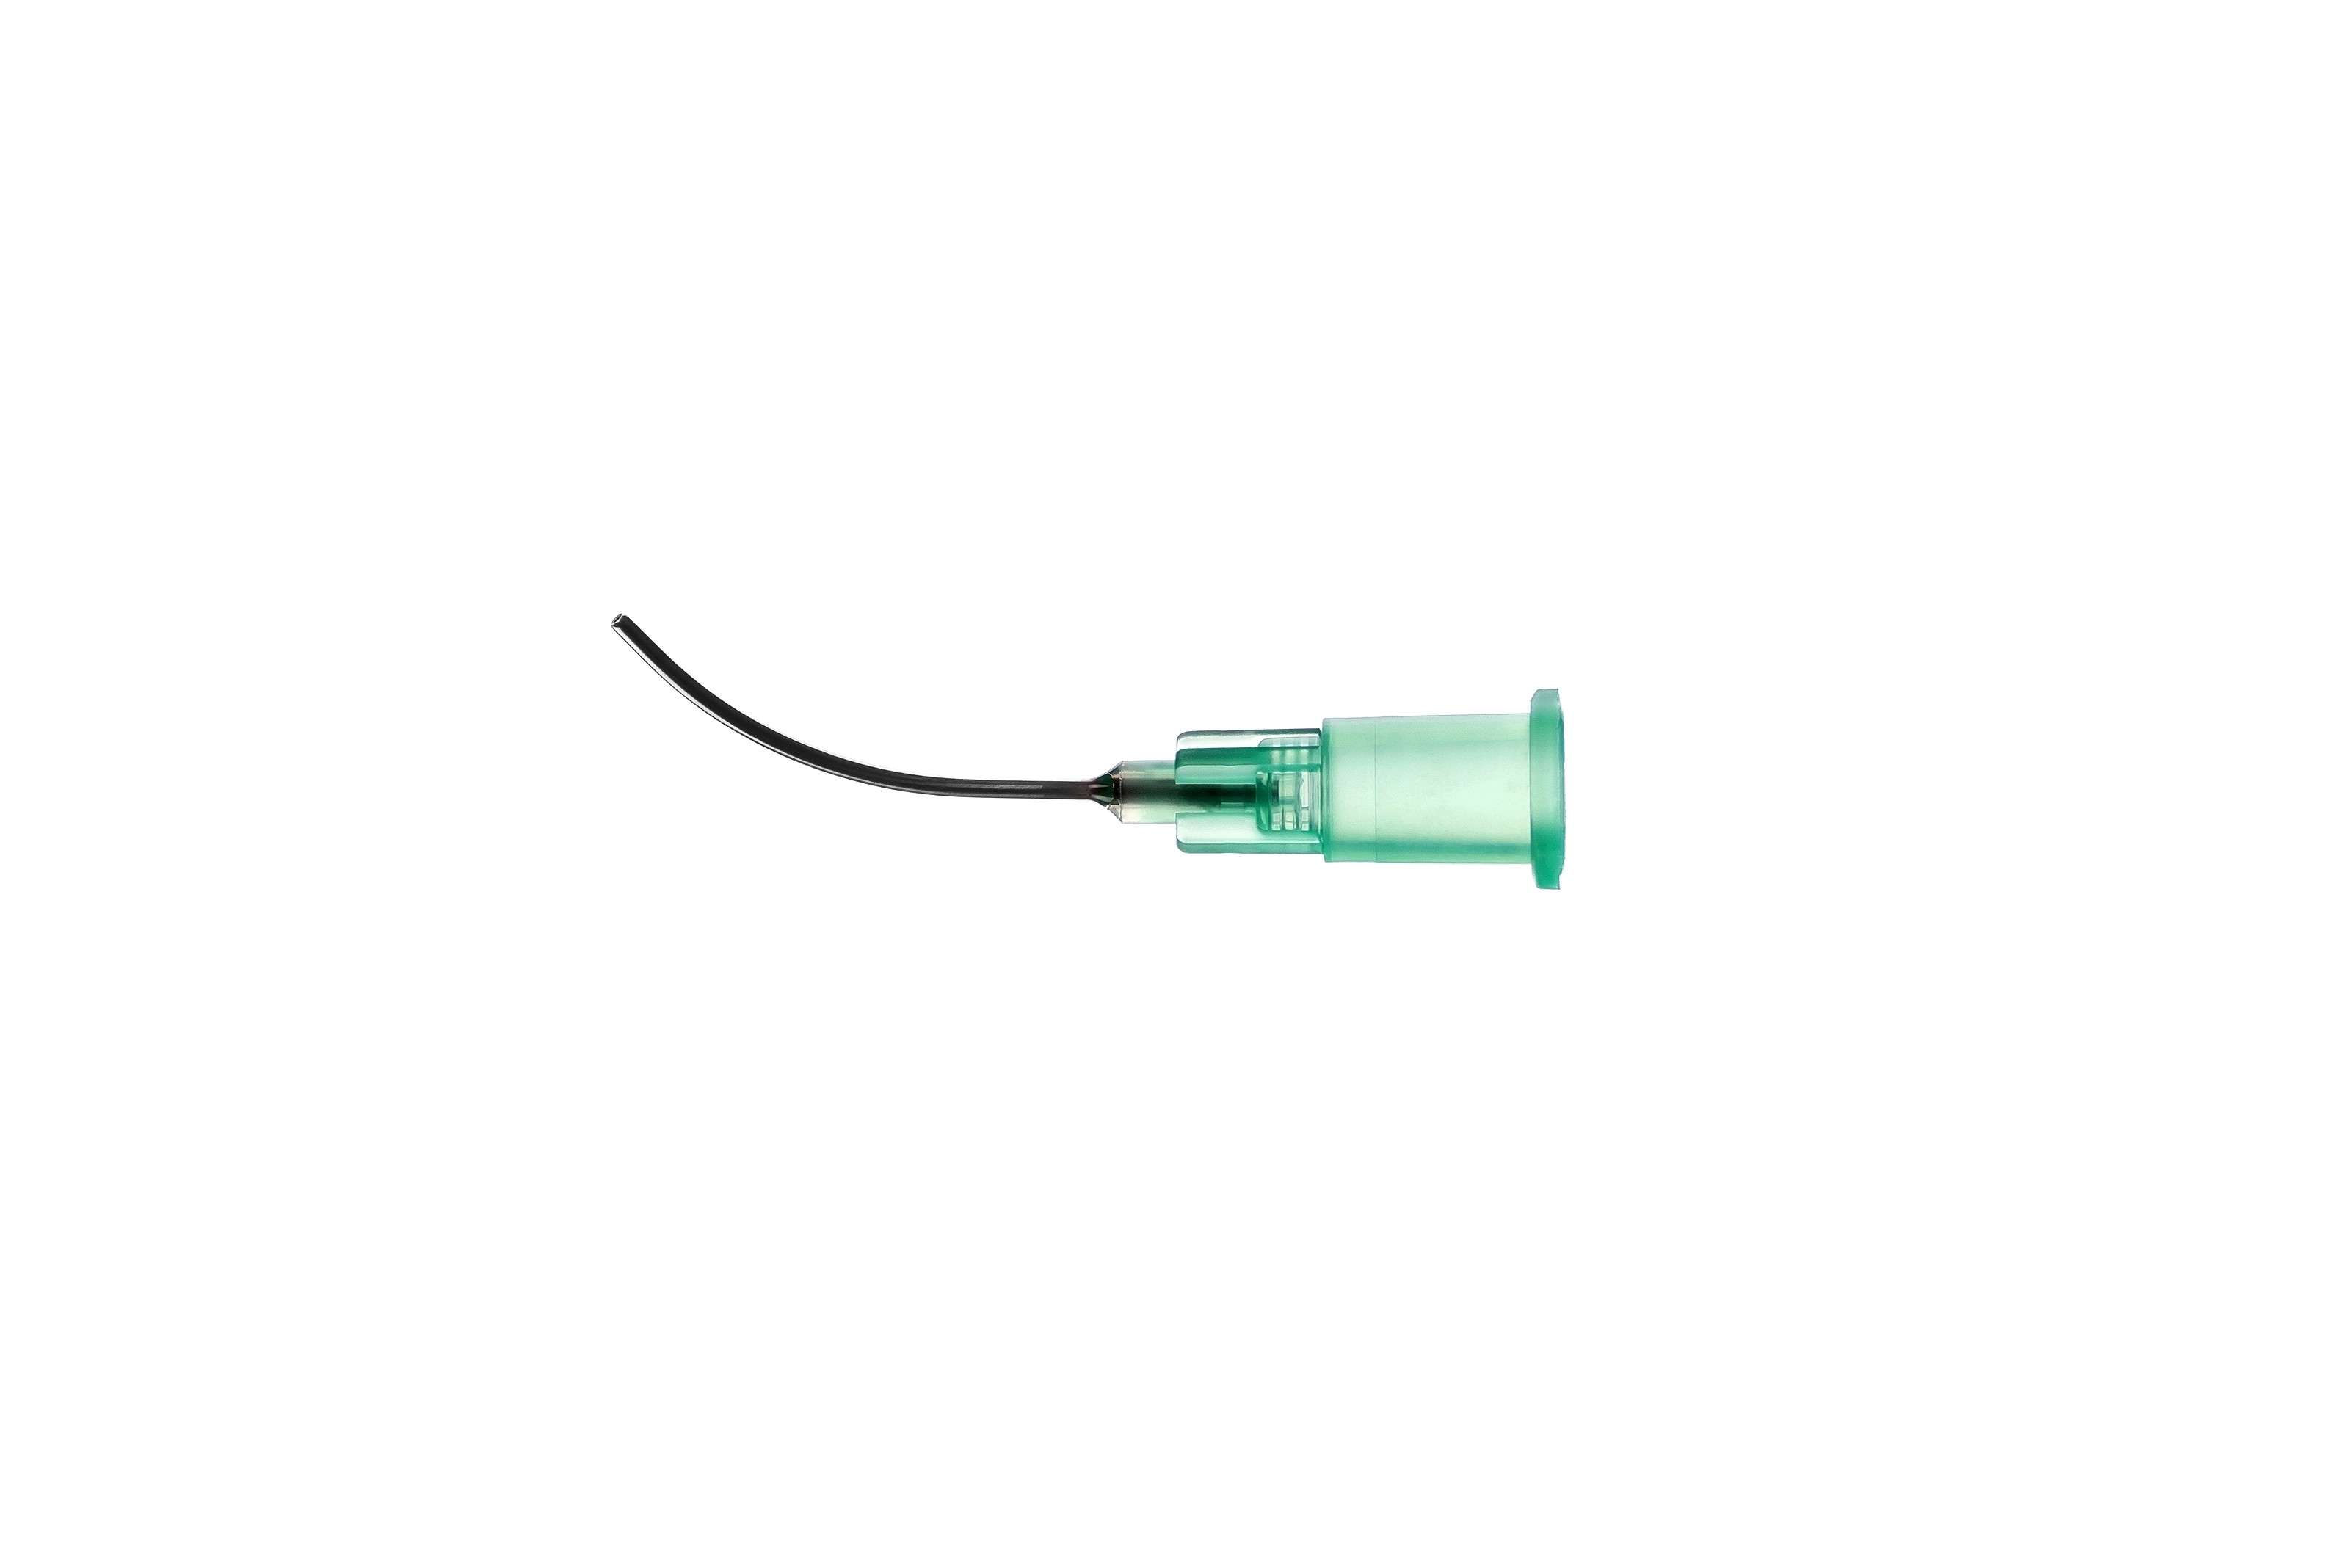 Канюля для субтеноновой анестезии стерильная кат. № DC-0166.8 - изображение 2